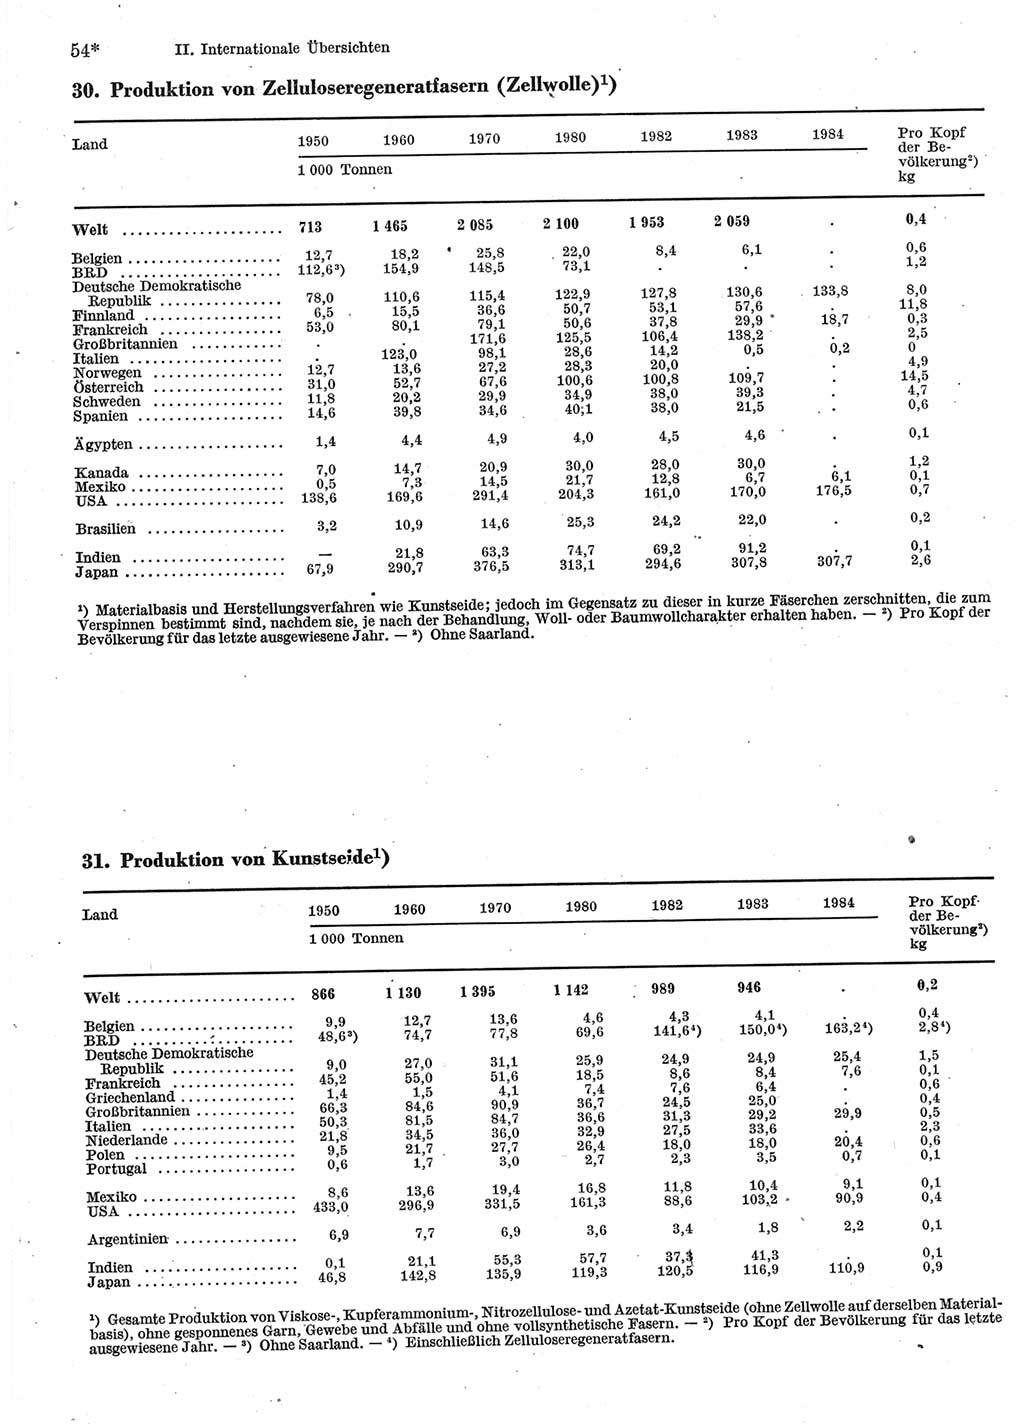 Statistisches Jahrbuch der Deutschen Demokratischen Republik (DDR) 1986, Seite 54 (Stat. Jb. DDR 1986, S. 54)